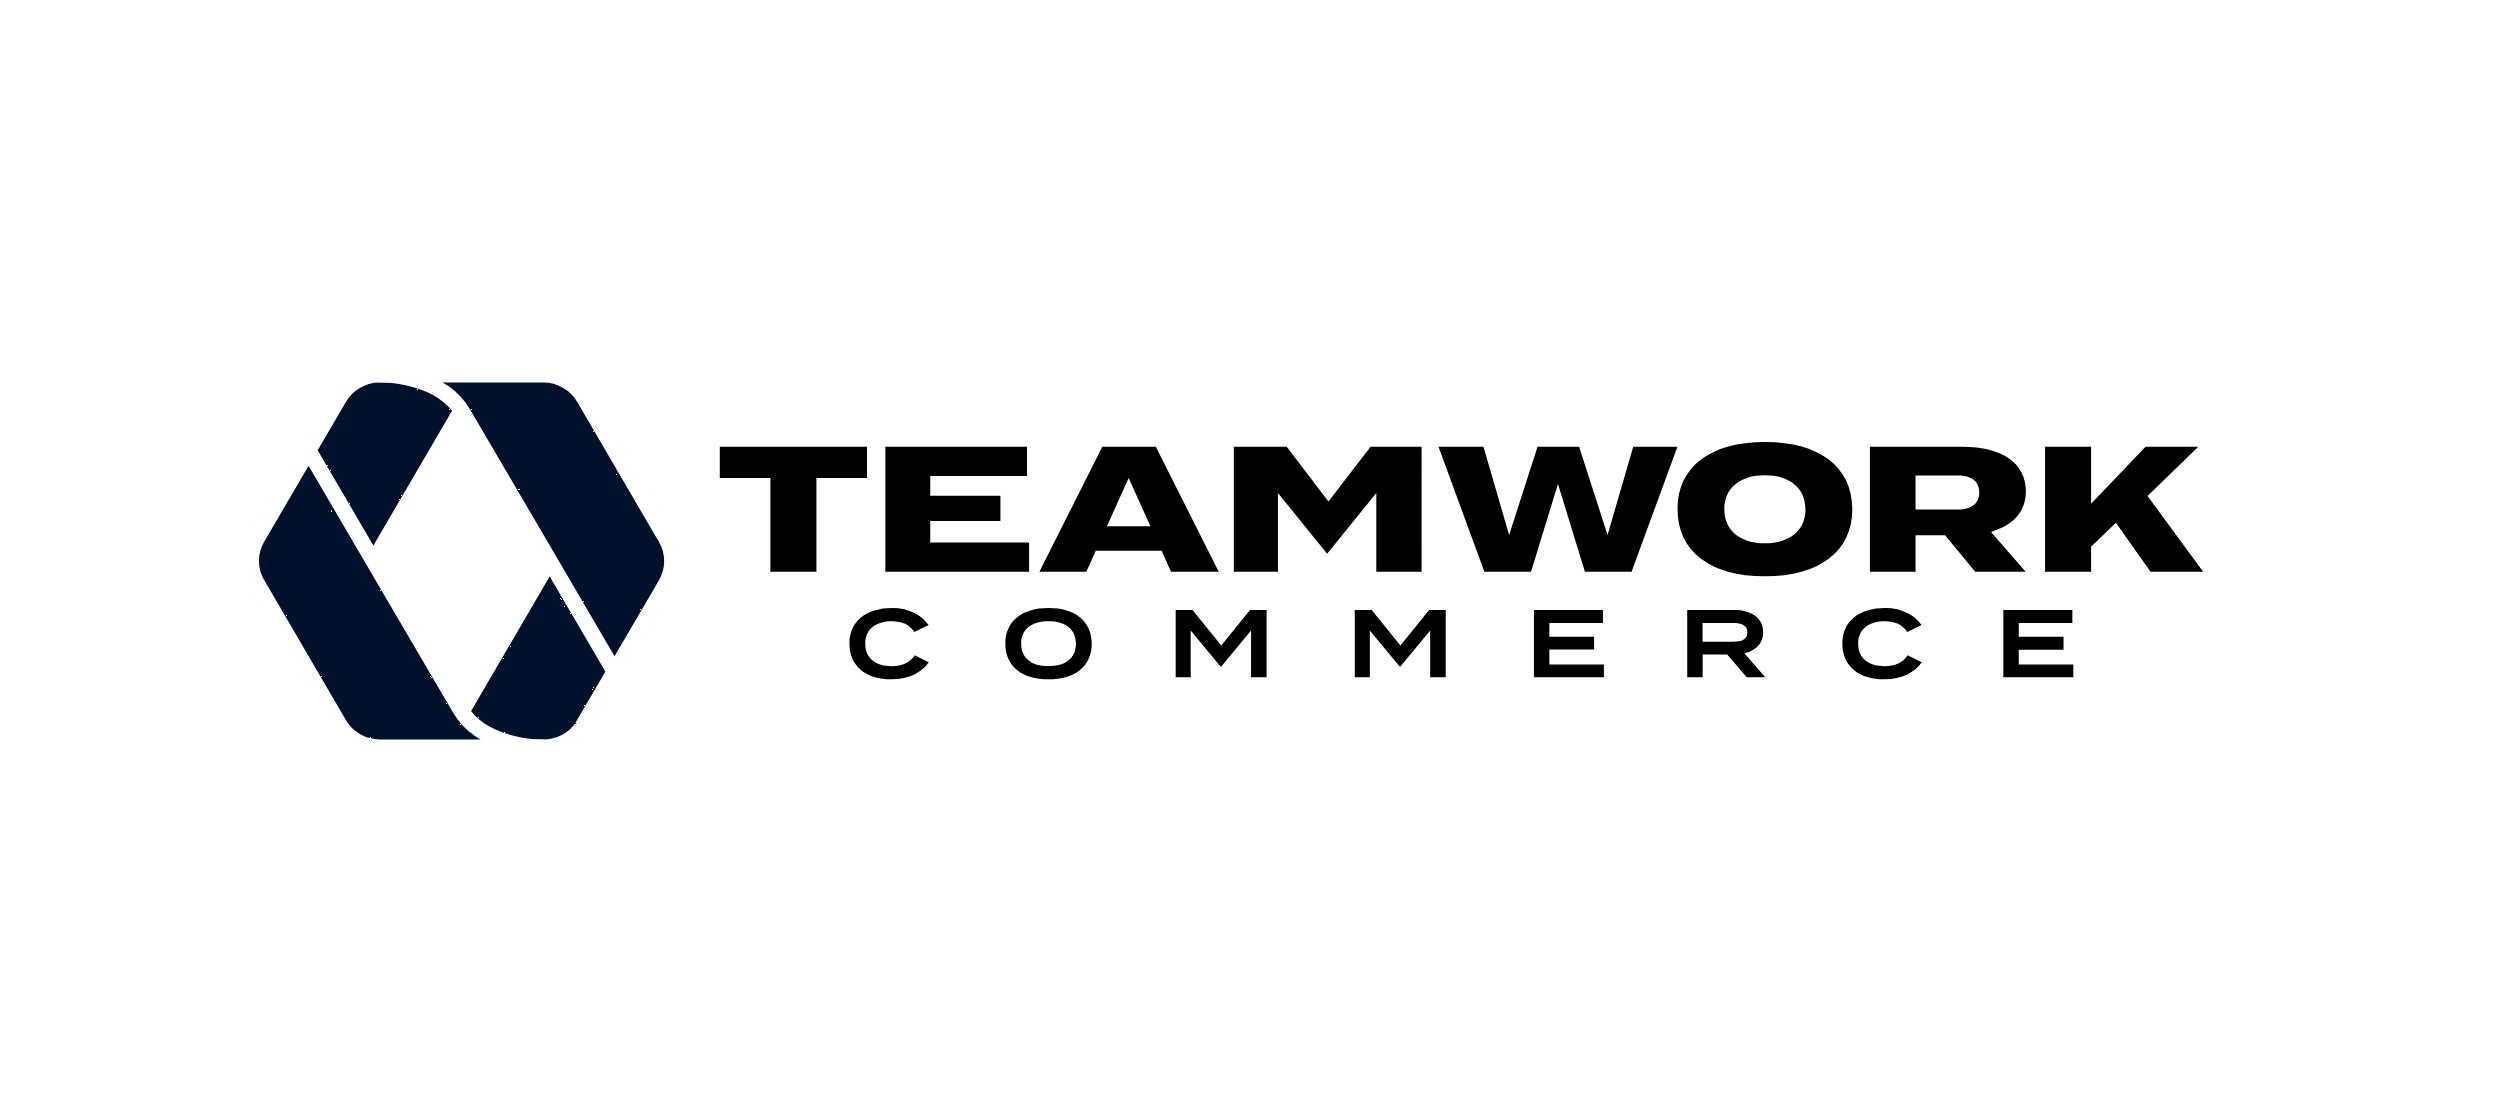 Teamwork Commerce logo